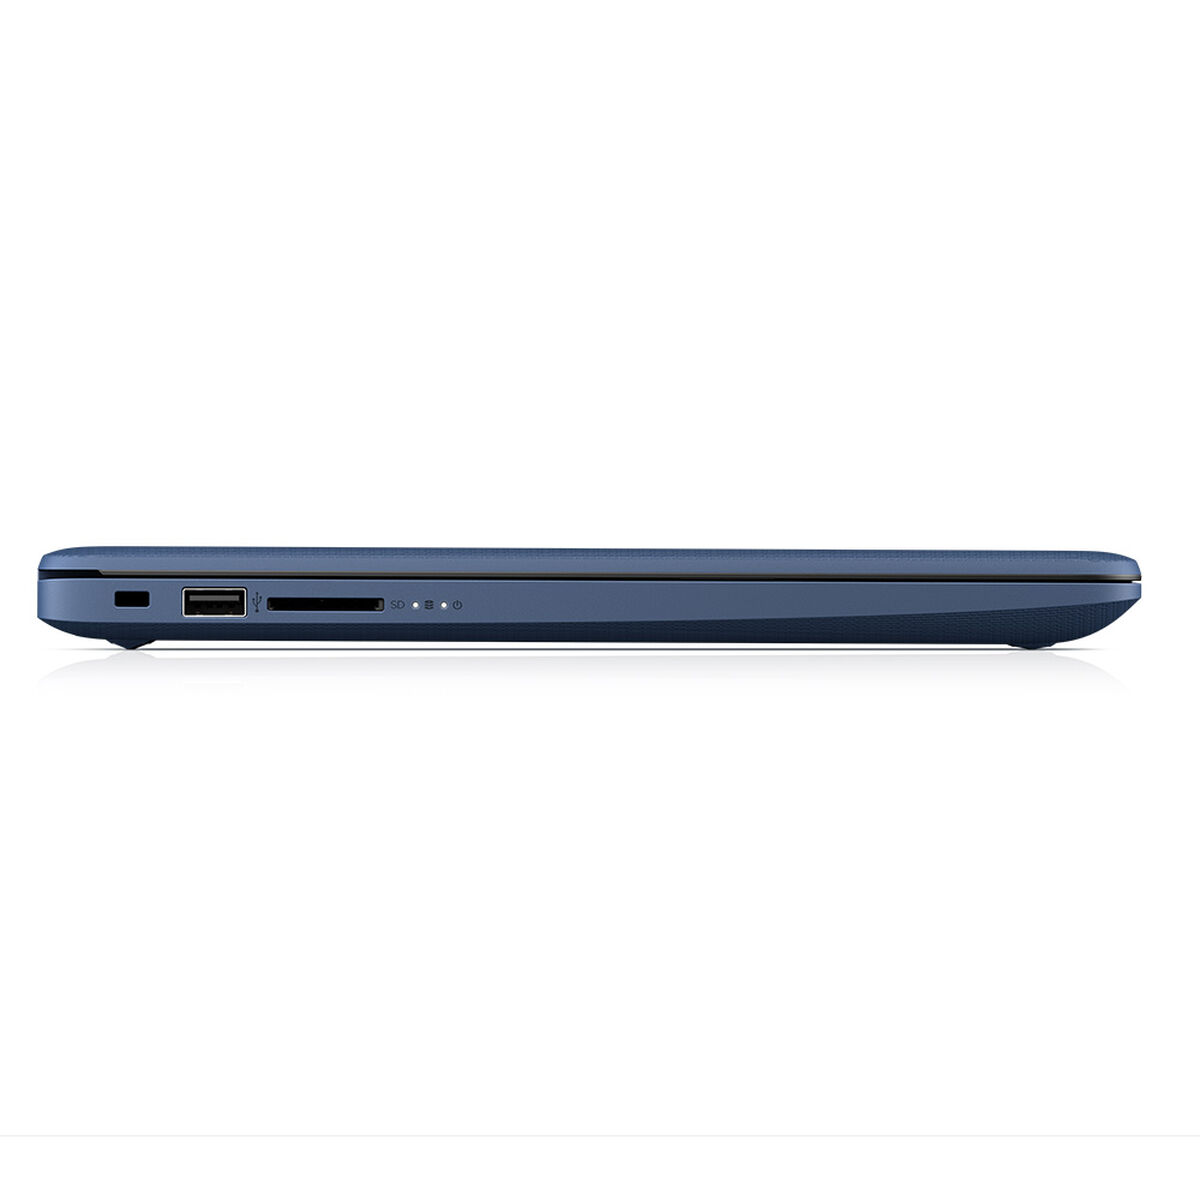 Notebook HP 14-cm0010 E2 4GB 500GB 14"